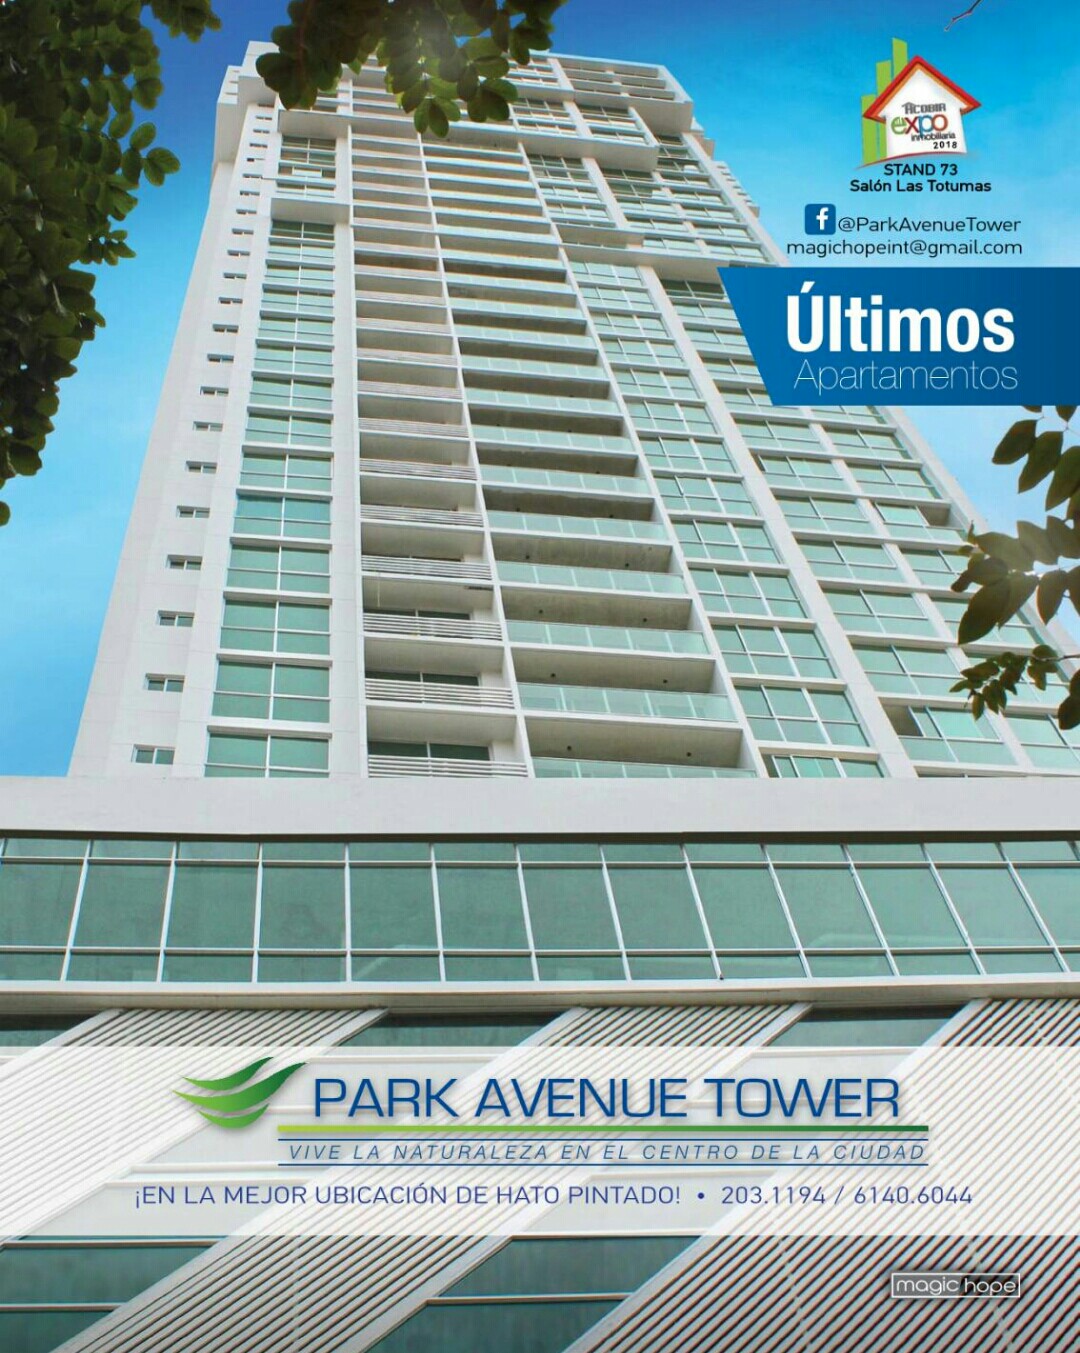 park avenue tower